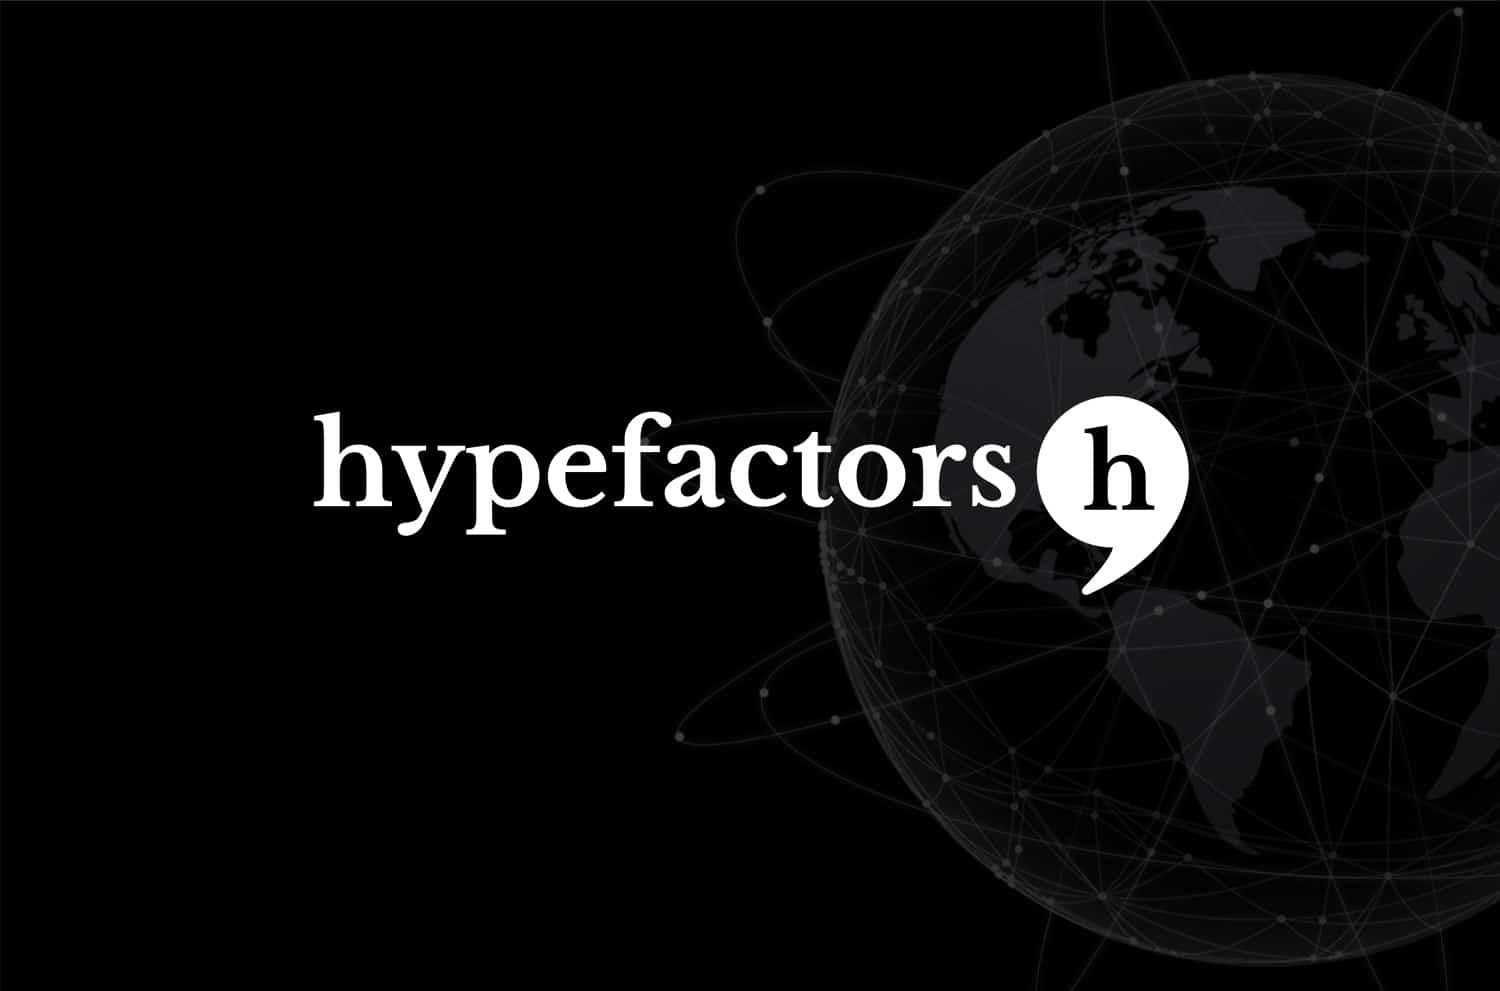 Hypefactors lancerer API-løsning